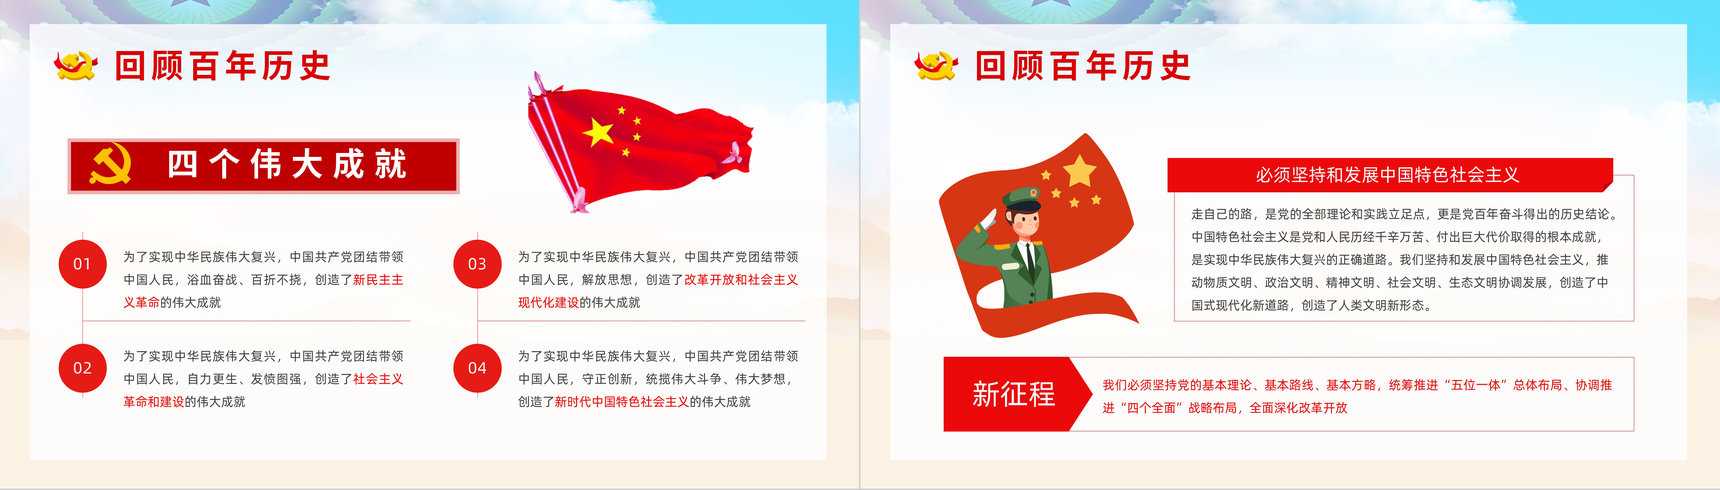 中国共产党百年辉煌宣传建党一百周年大会讲话精神解读学习动员大会PPT模板-3